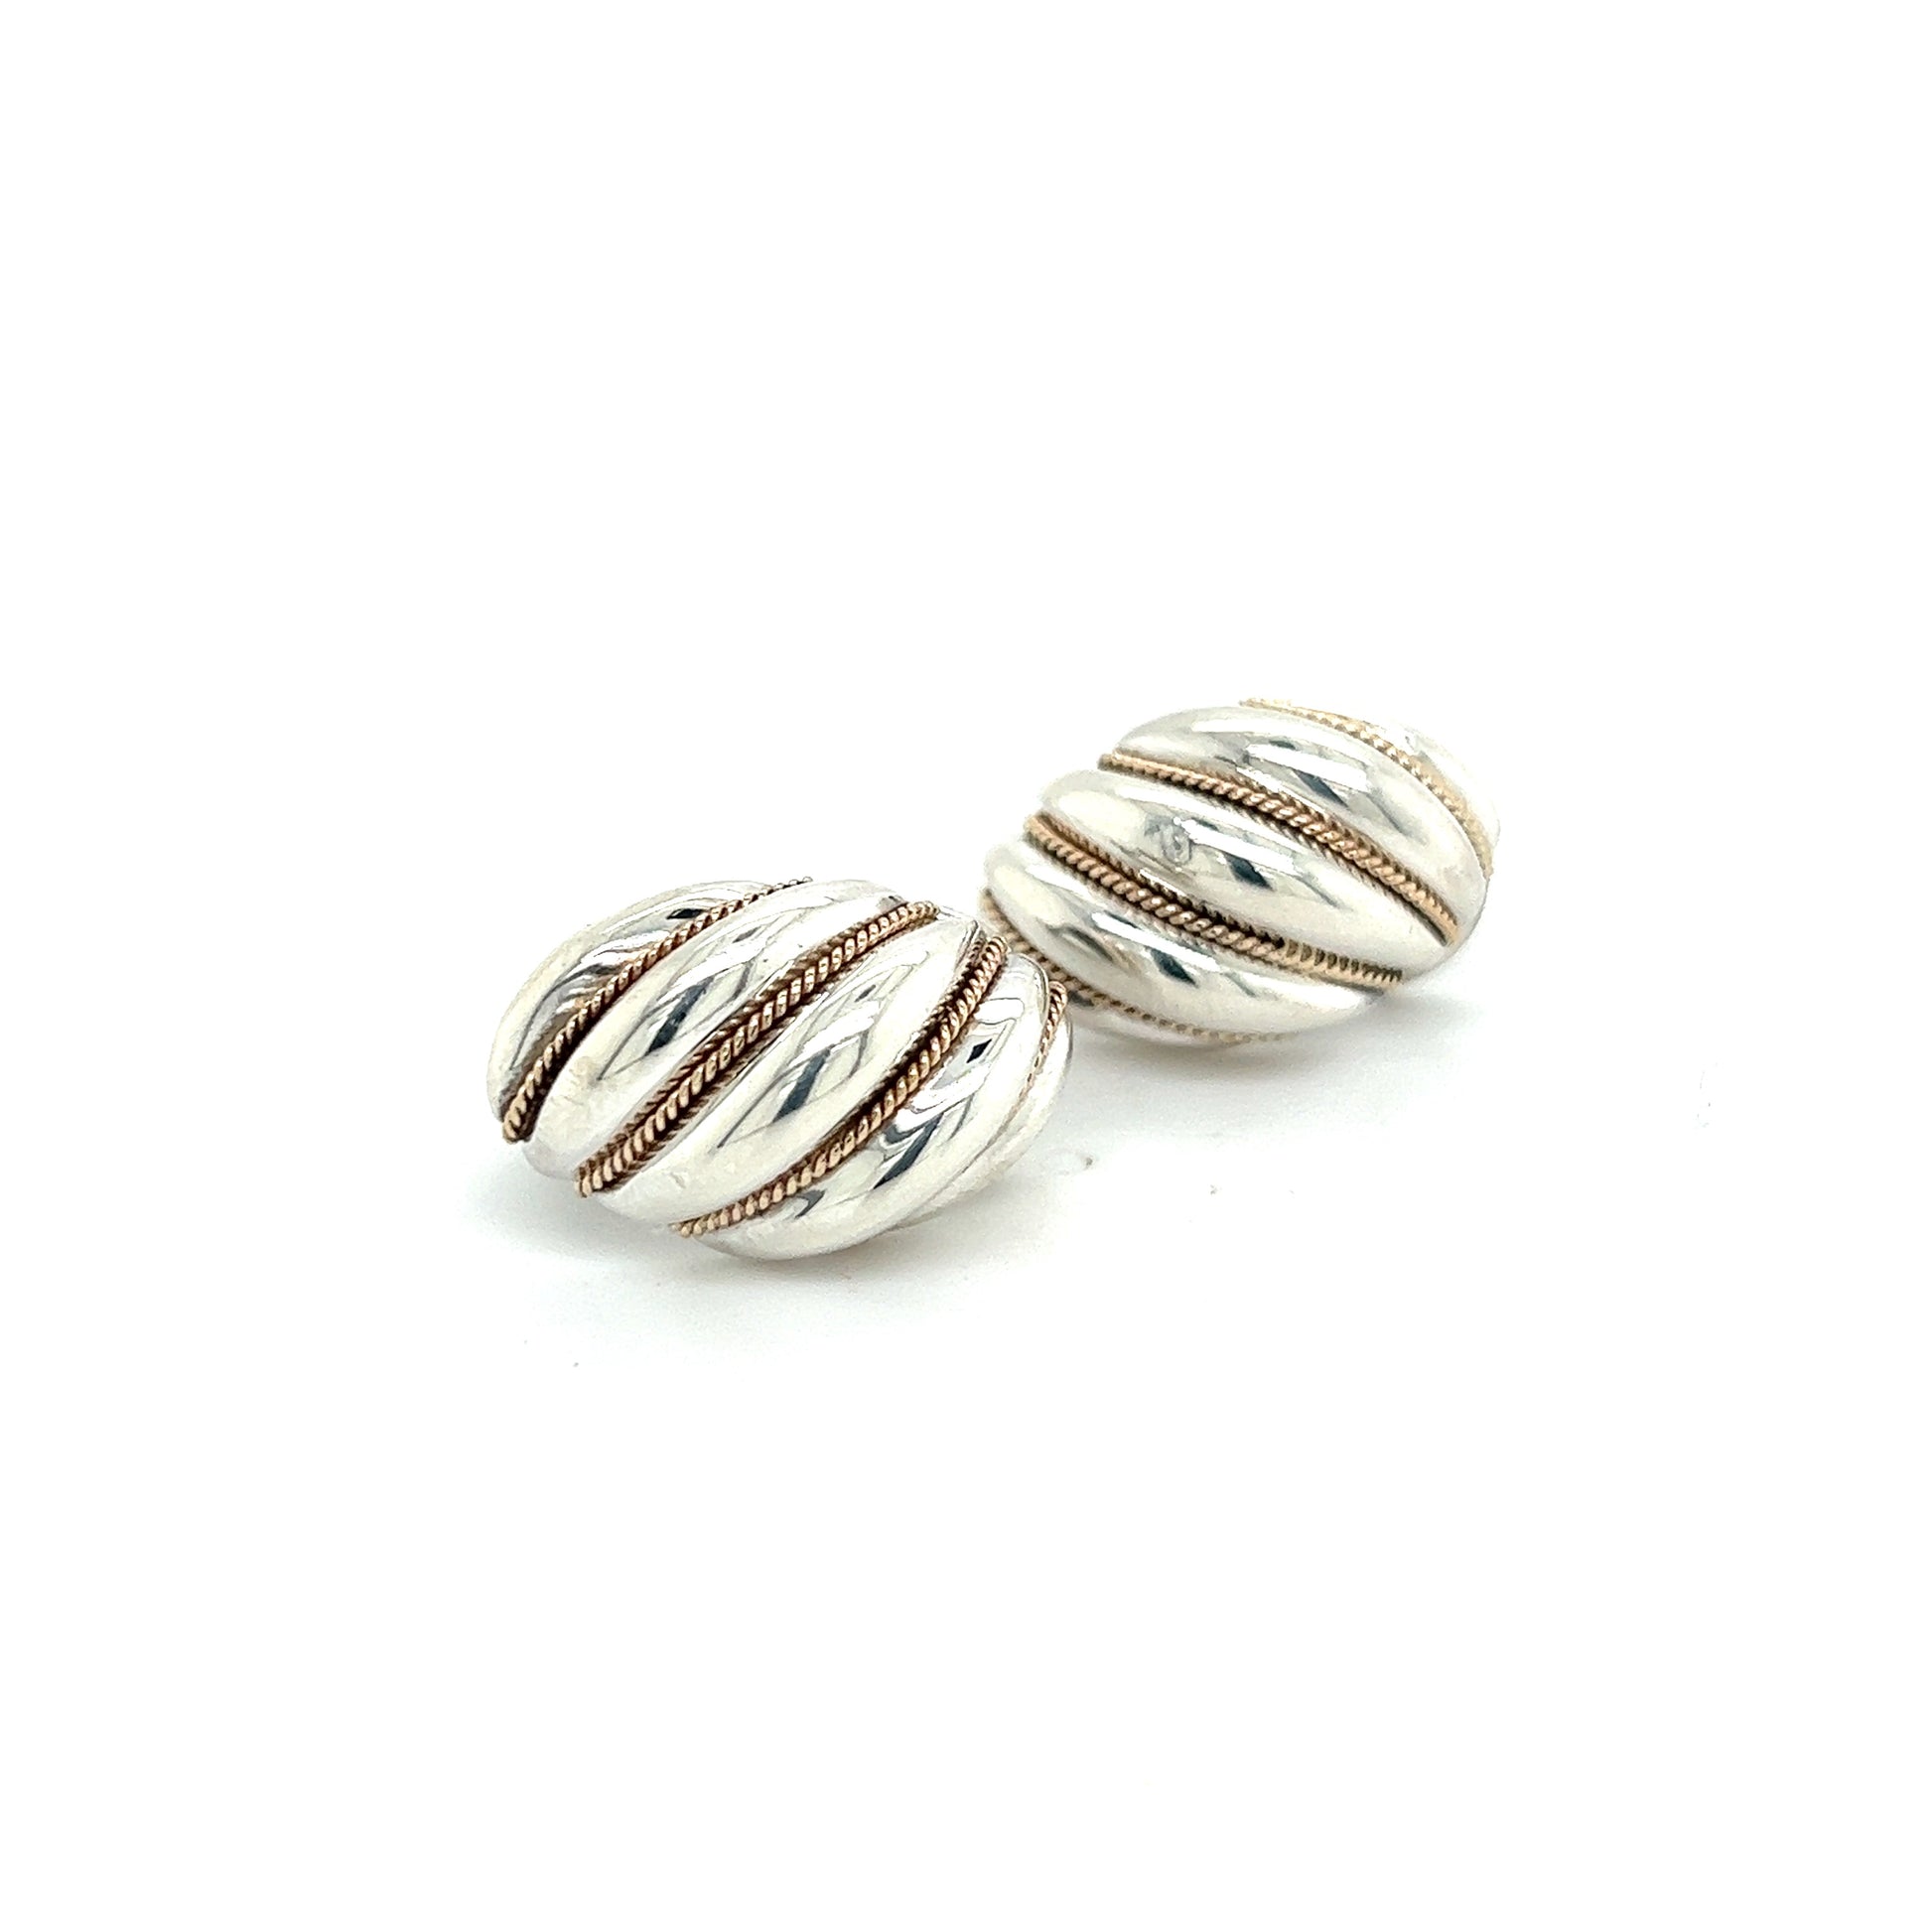 Tiffany & Co Estate Shrimp Earrings 18k Gold + Sterling Silver TIF563 - Certified Fine Jewelry